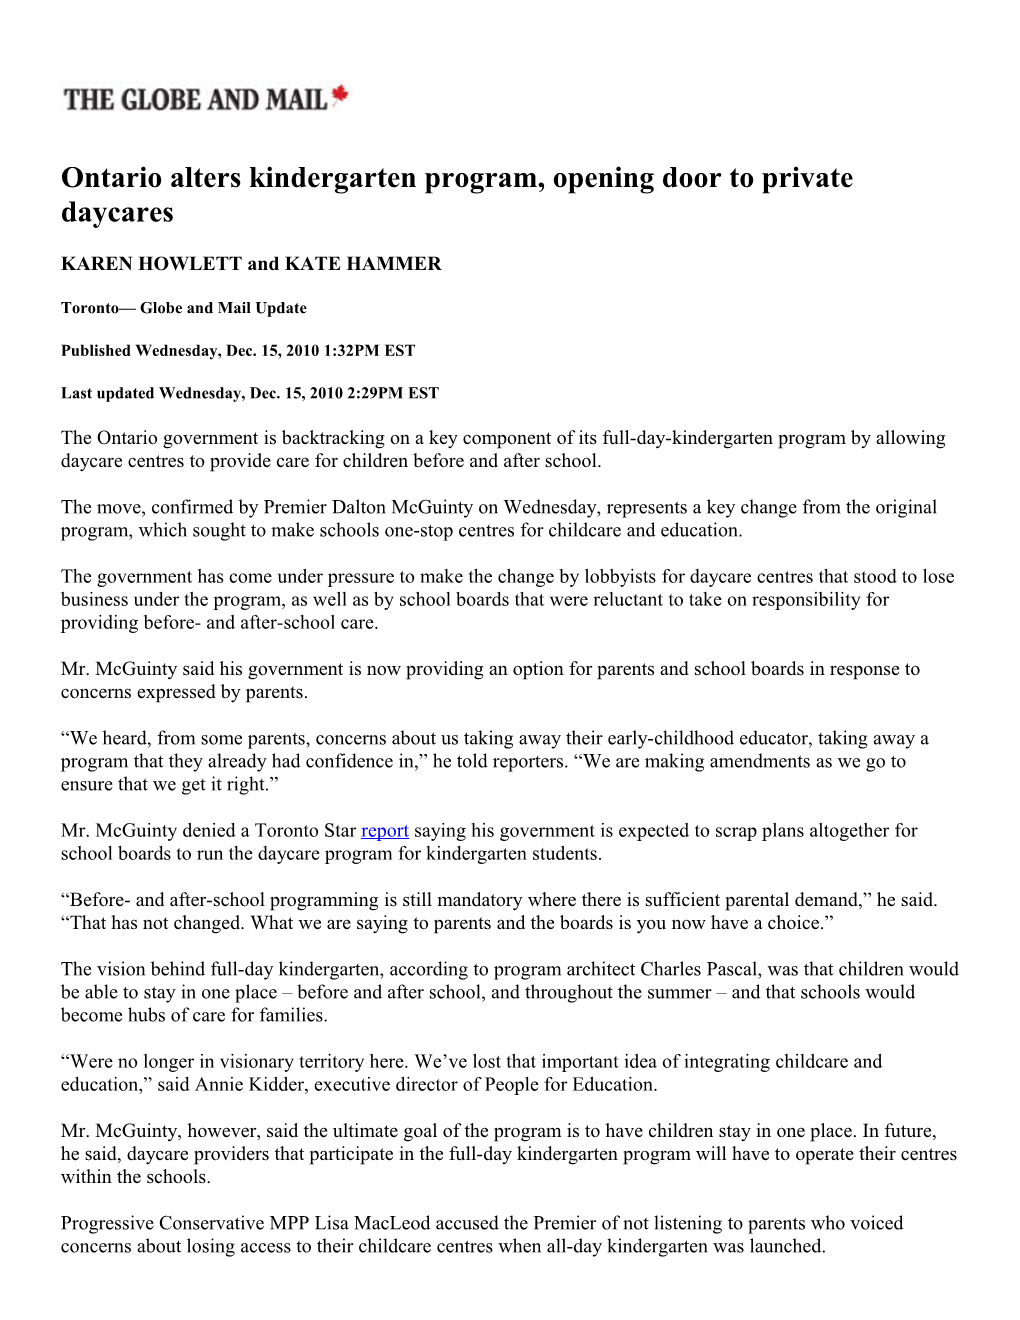 Ontario Alters Kindergarten Program, Opening Door to Private Daycares